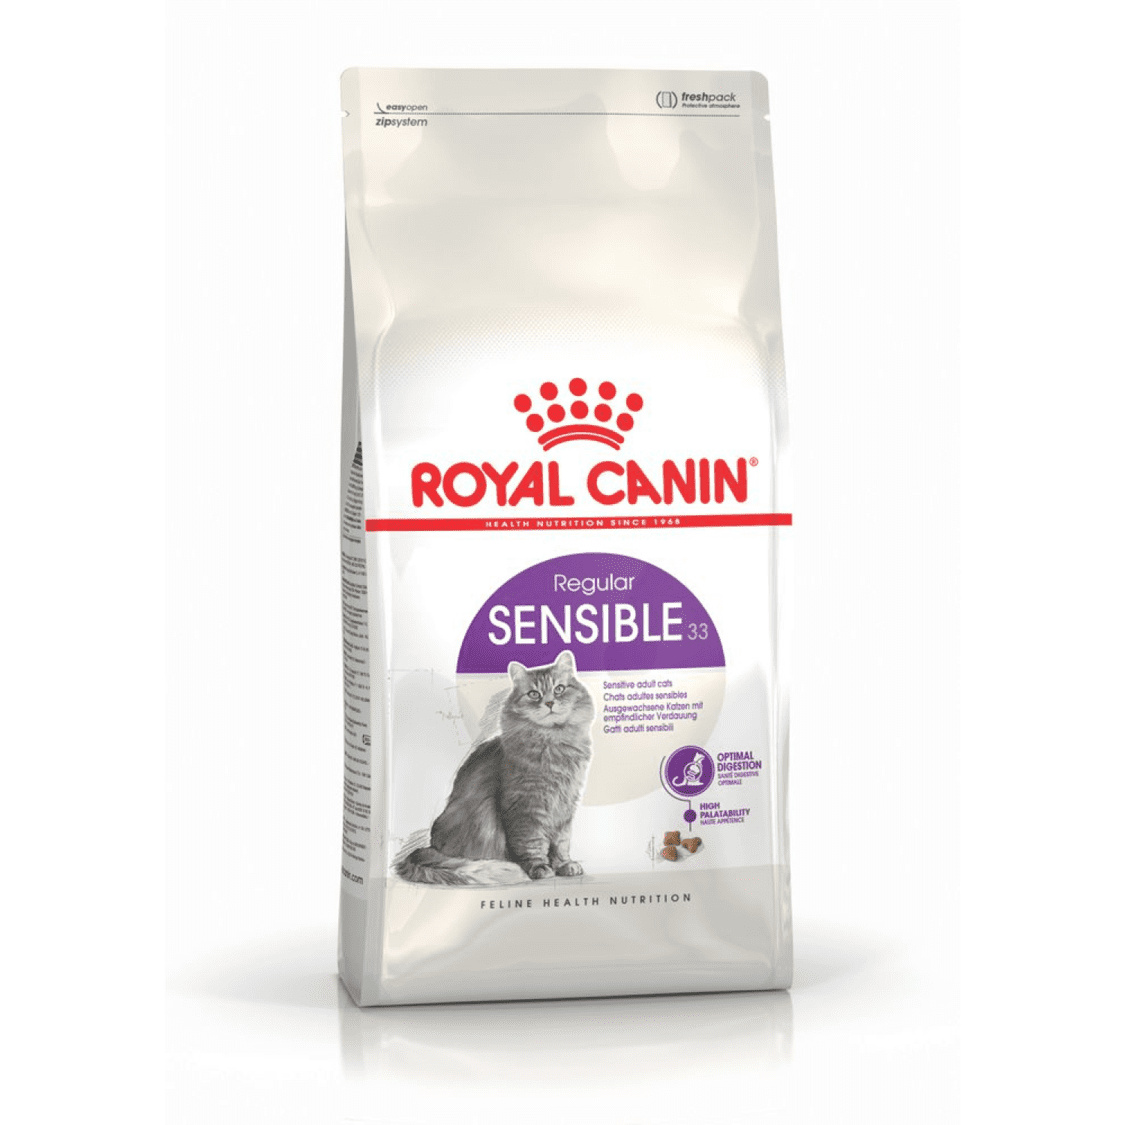 Royal Canin Корм Royal Canin корм для кошек с чувствительным пищеварением (1-7 лет) (15 кг) royal canin royal canin корм для кастрированных кошек и котов 1 7 лет 200 г